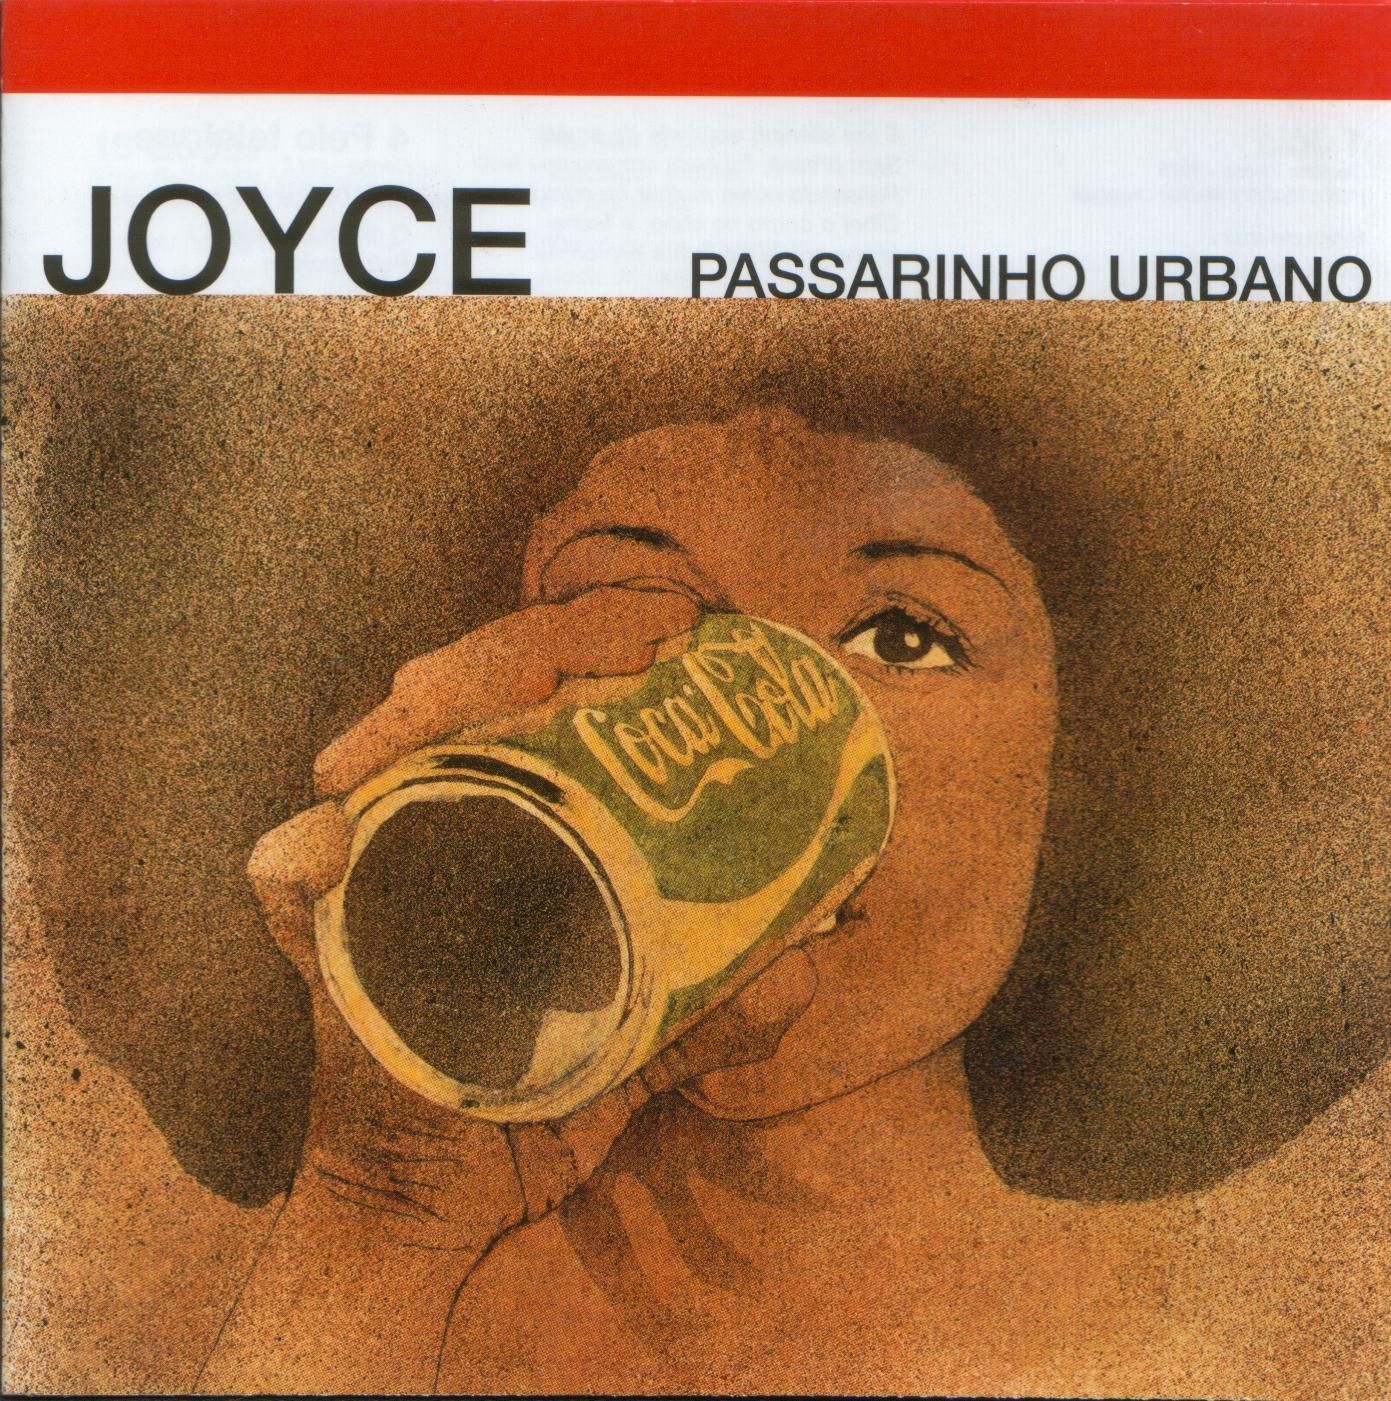 Imagem do álbum Passarinho Urbano do(a) artista Joyce